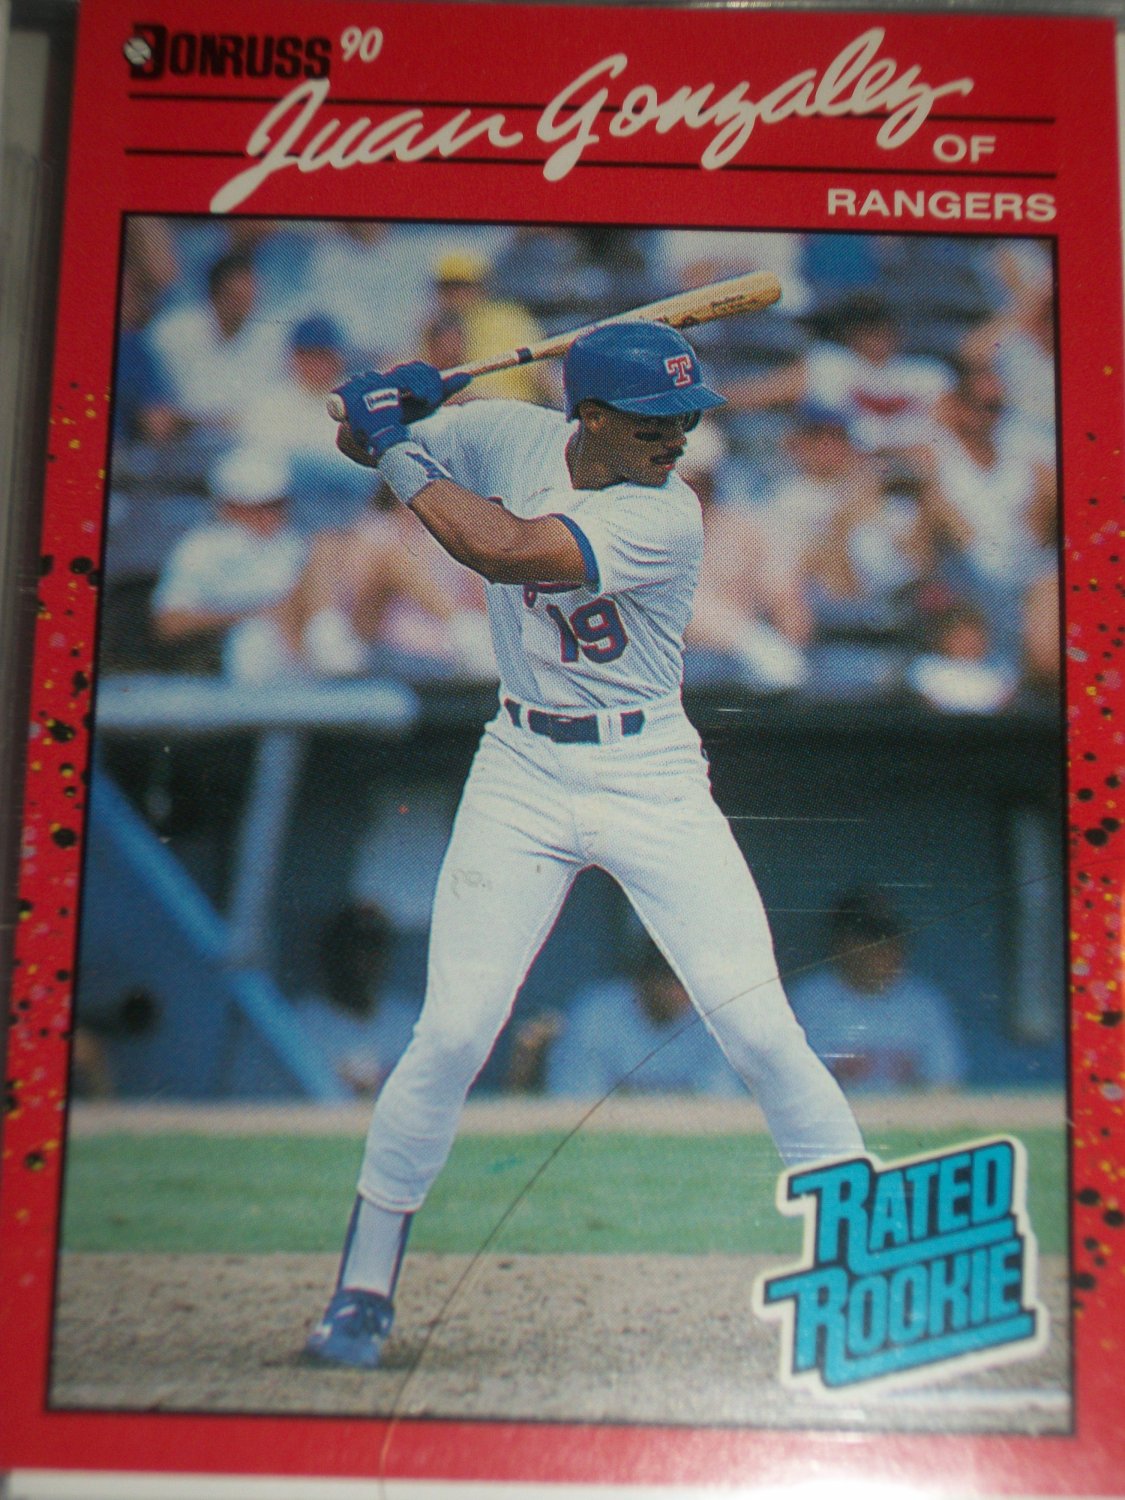 Juan Gonzalez 1990 Donruss baseball card- Rookie